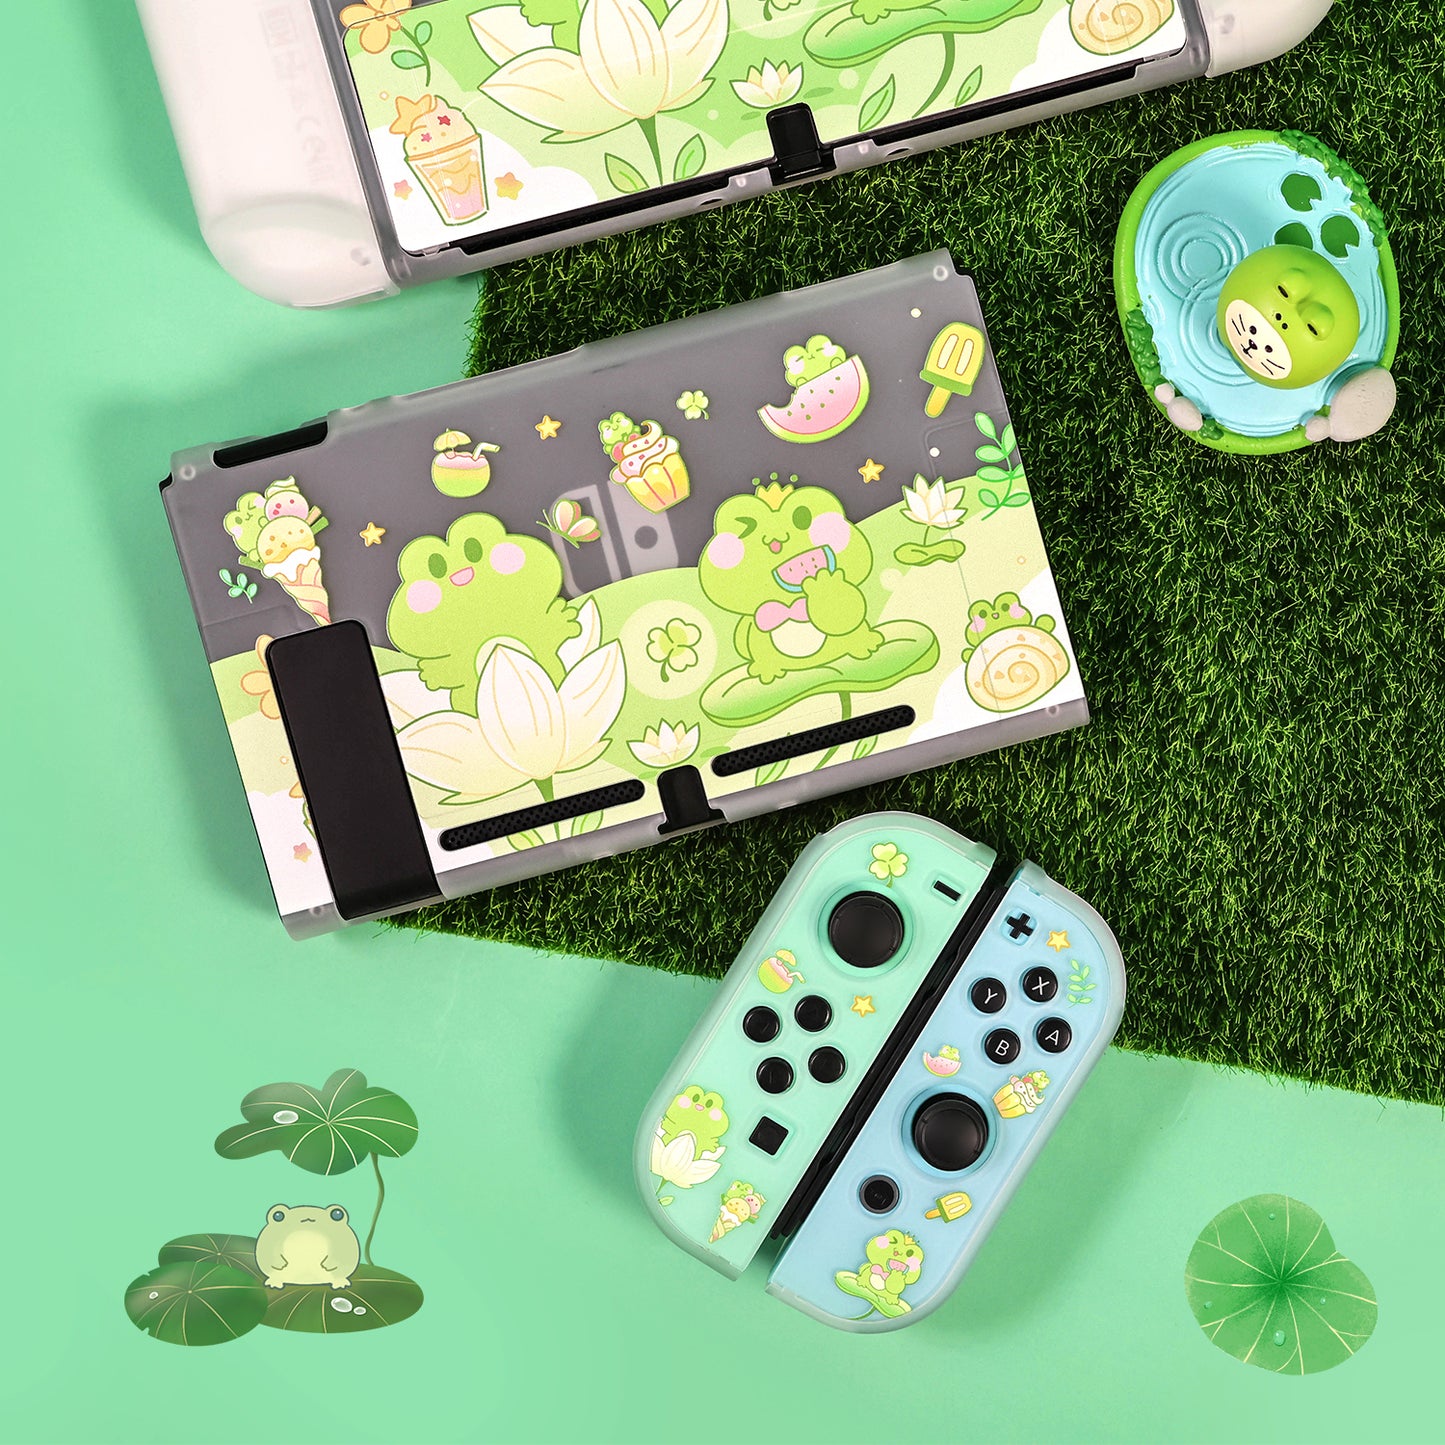 BlingKiyo Travel Frog Nintendo Switch/oled Protective Shell